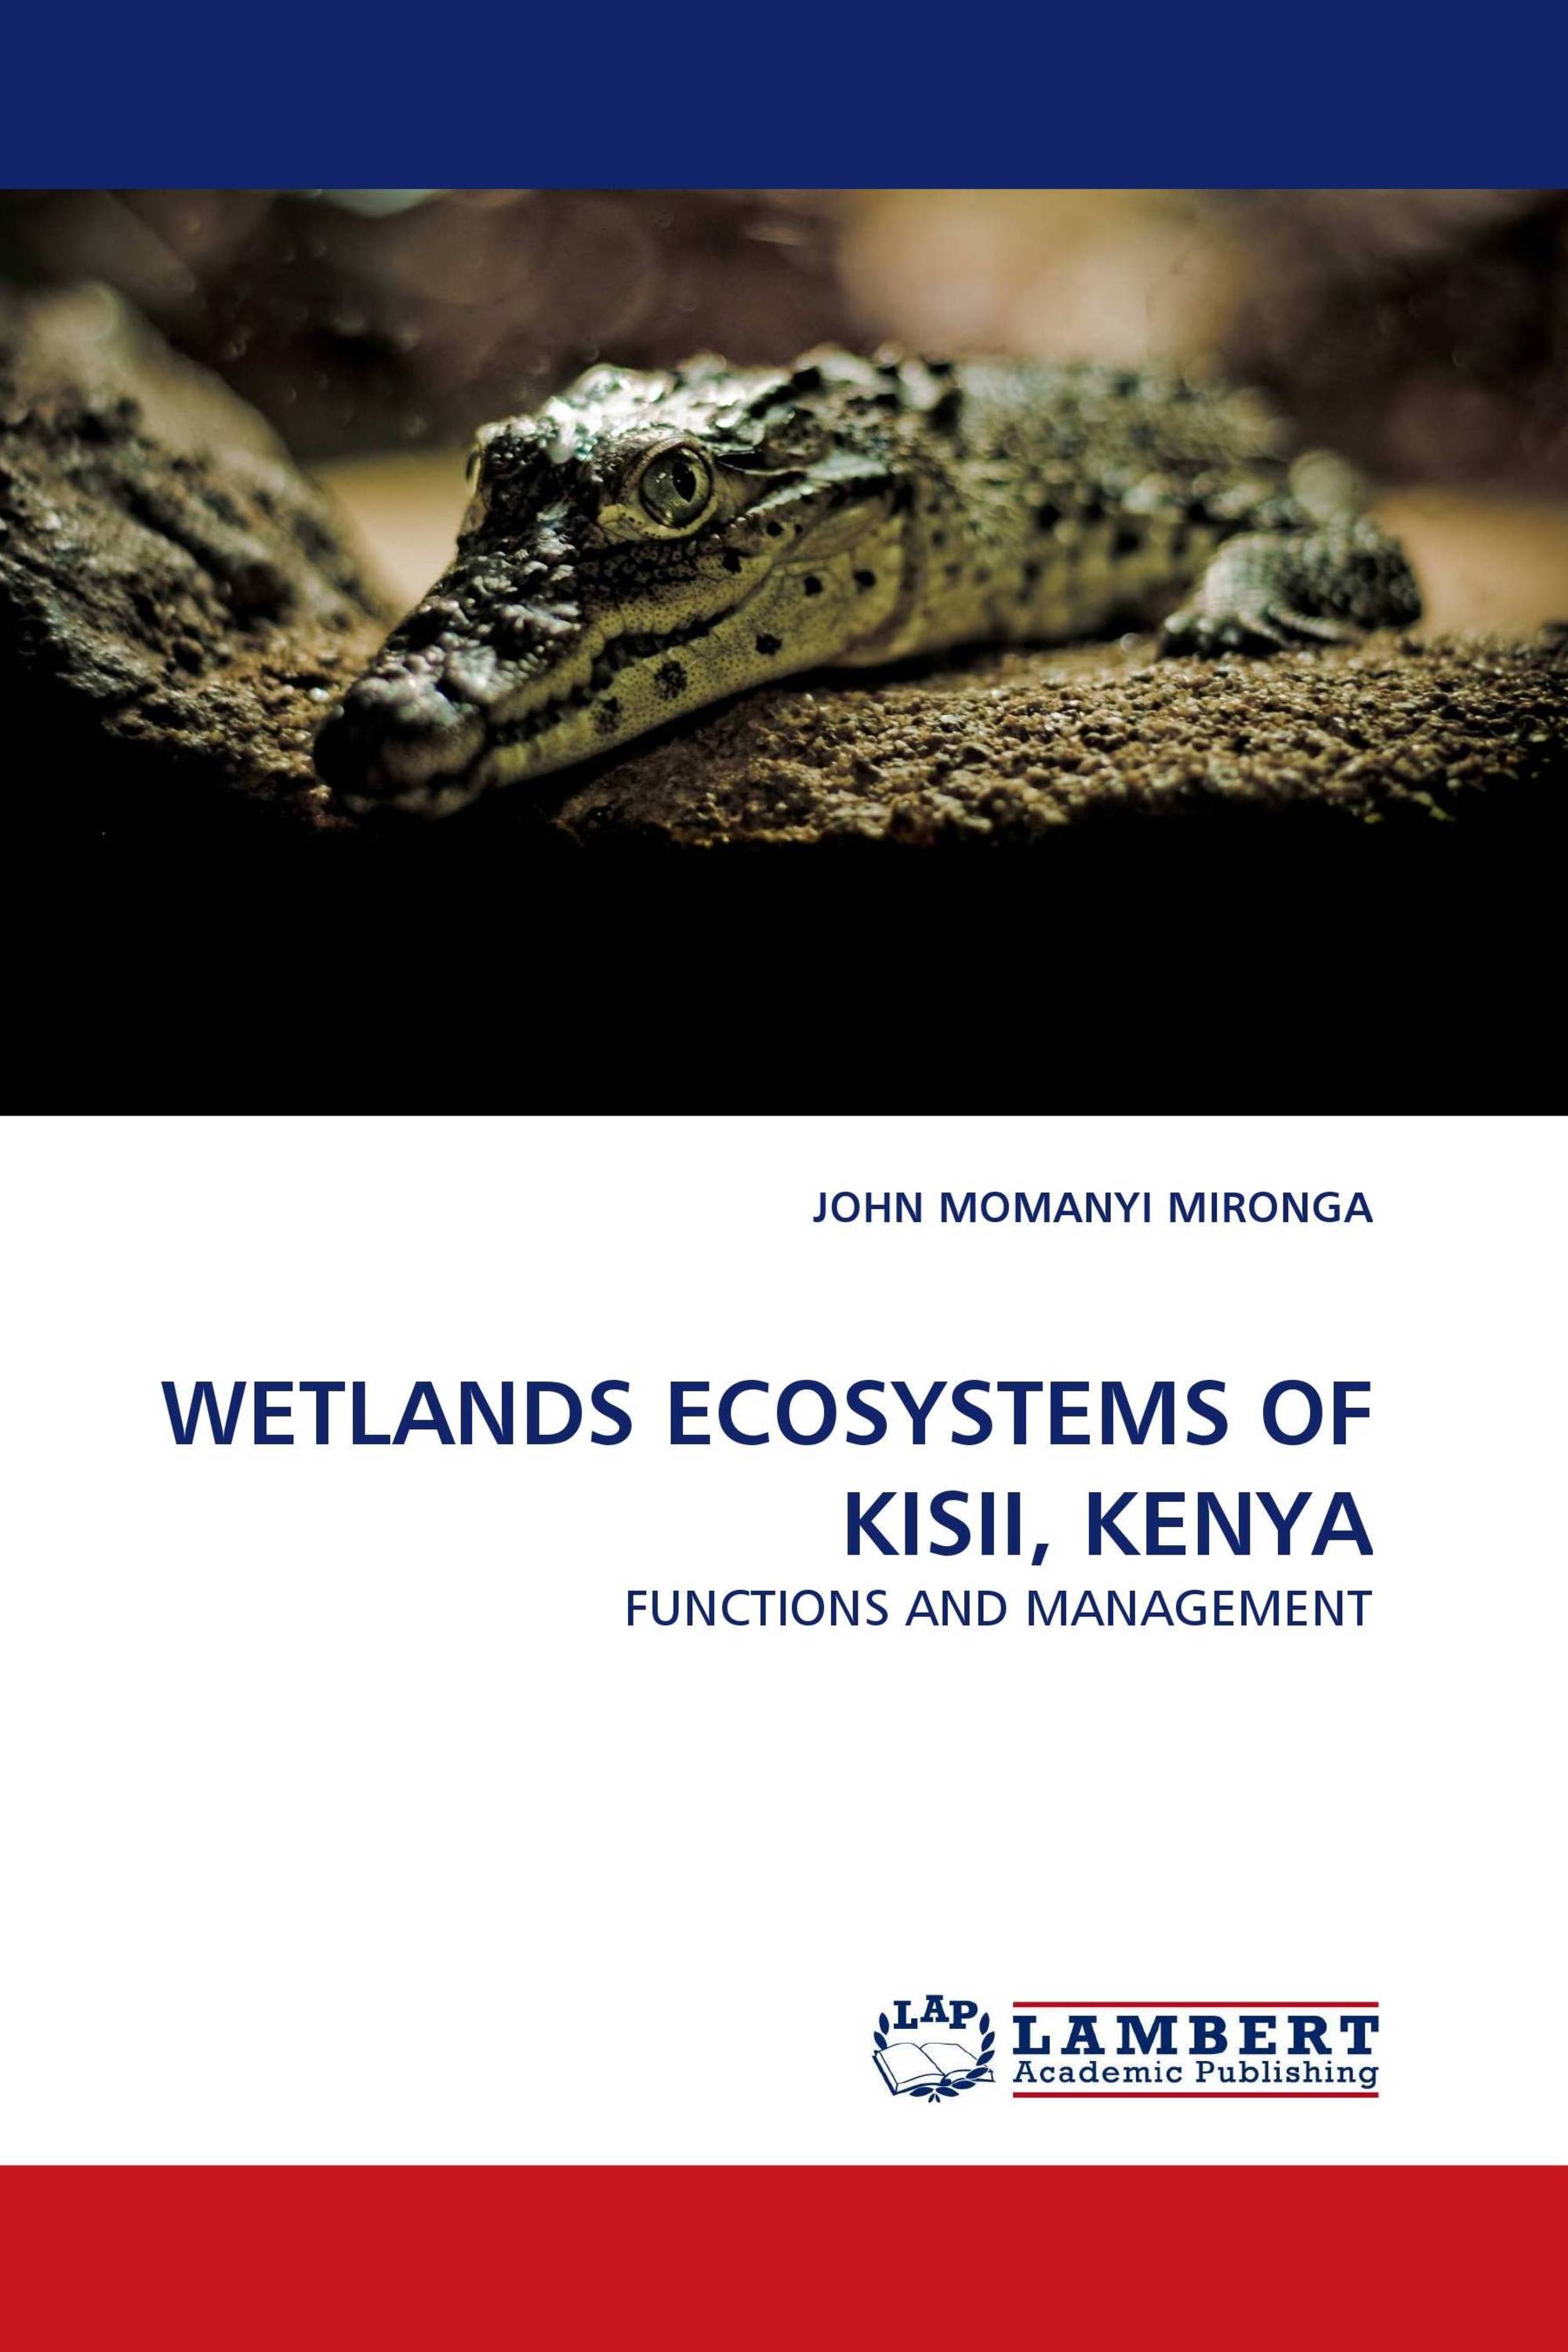 WETLANDS ECOSYSTEMS OF KISII, KENYA